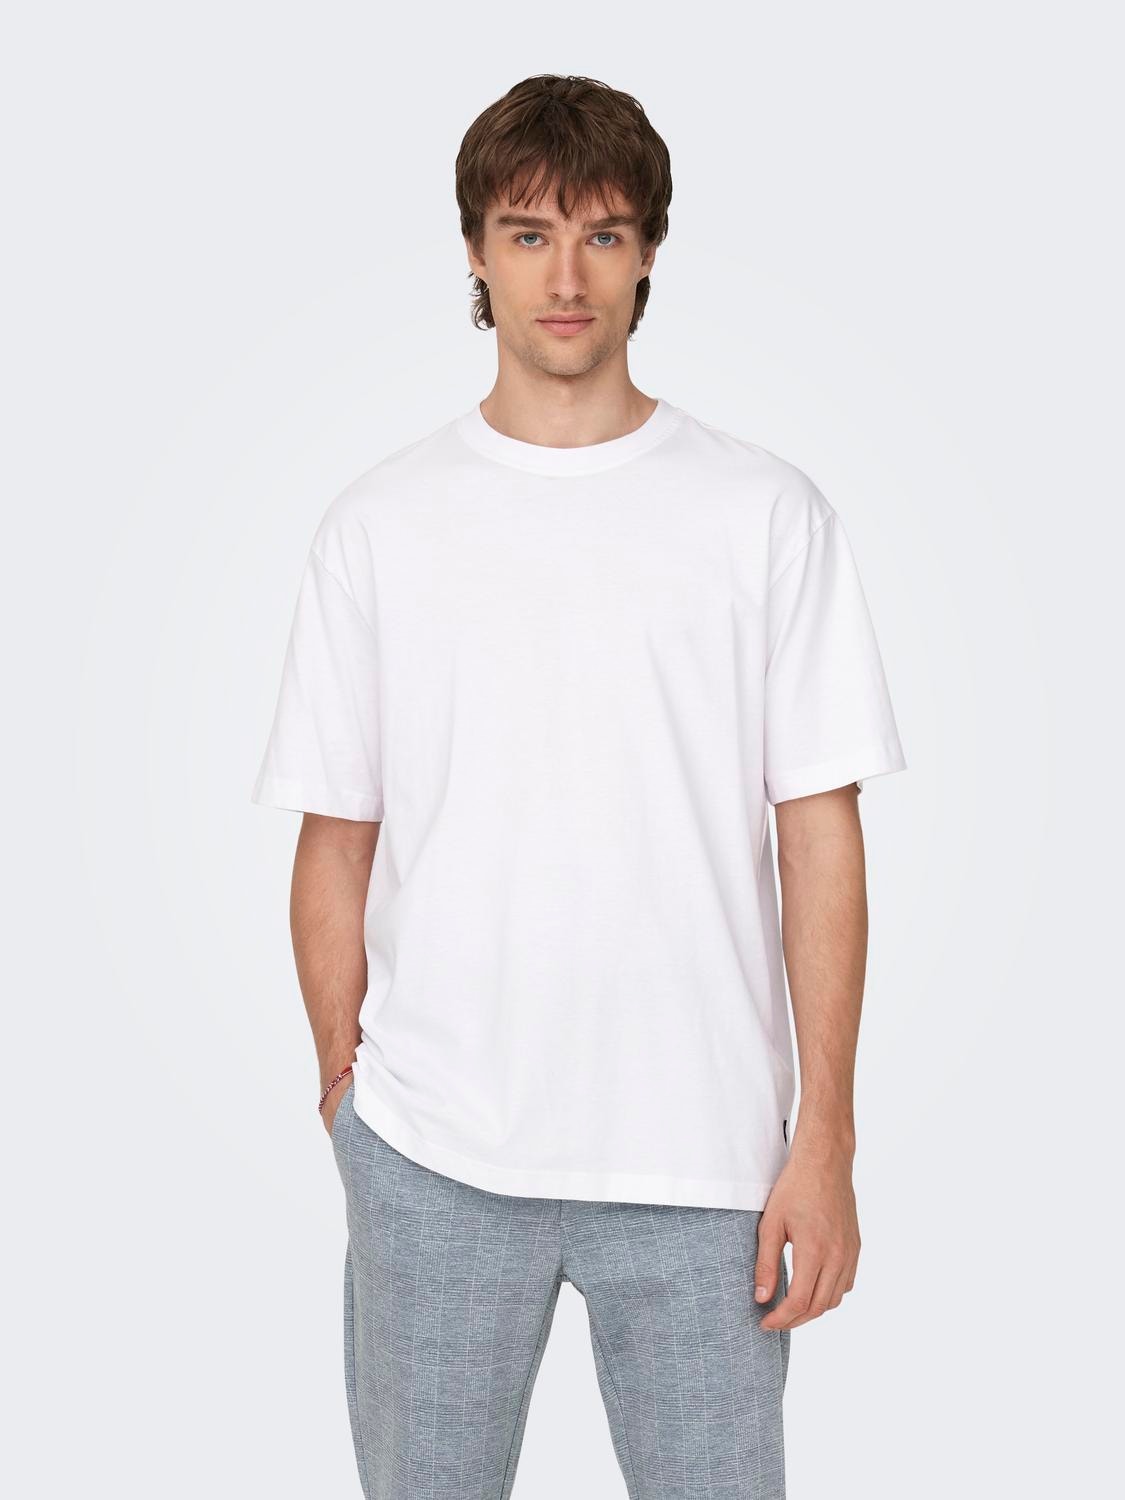 Camisetas Deportivas Cuello Redondo  Compra Online Camisetas Deportivas  Cuello Redondo en Punto Blanco®